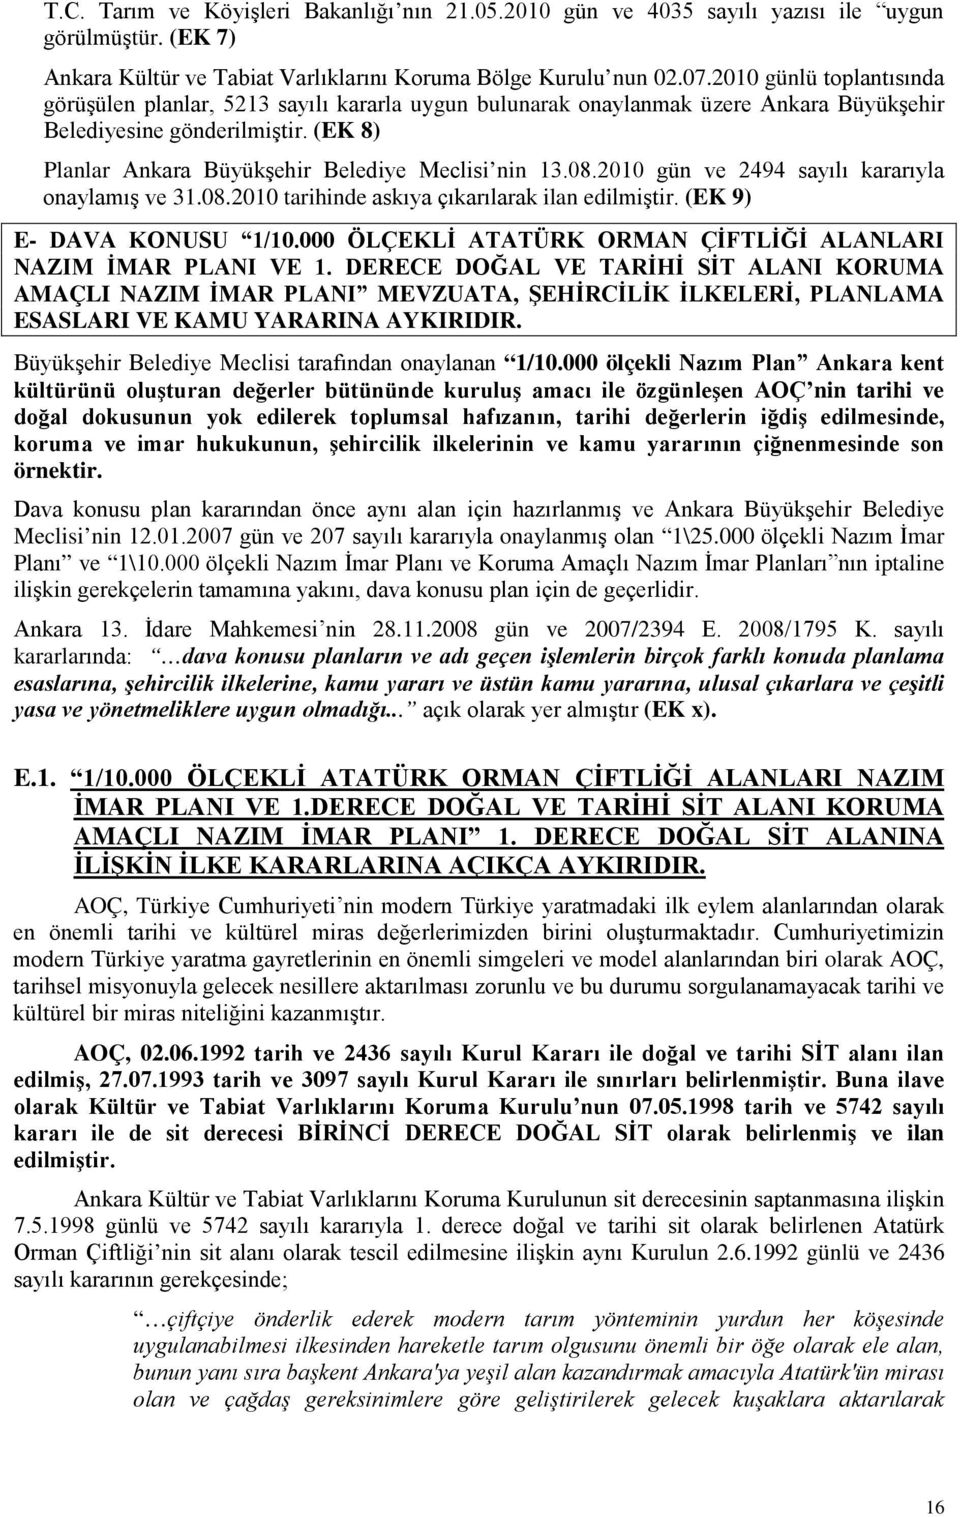 (EK 8) Planlar Ankara Büyükşehir Belediye Meclisi nin 13.08.2010 gün ve 2494 sayılı kararıyla onaylamış ve 31.08.2010 tarihinde askıya çıkarılarak ilan edilmiştir. (EK 9) E- DAVA KONUSU 1/10.